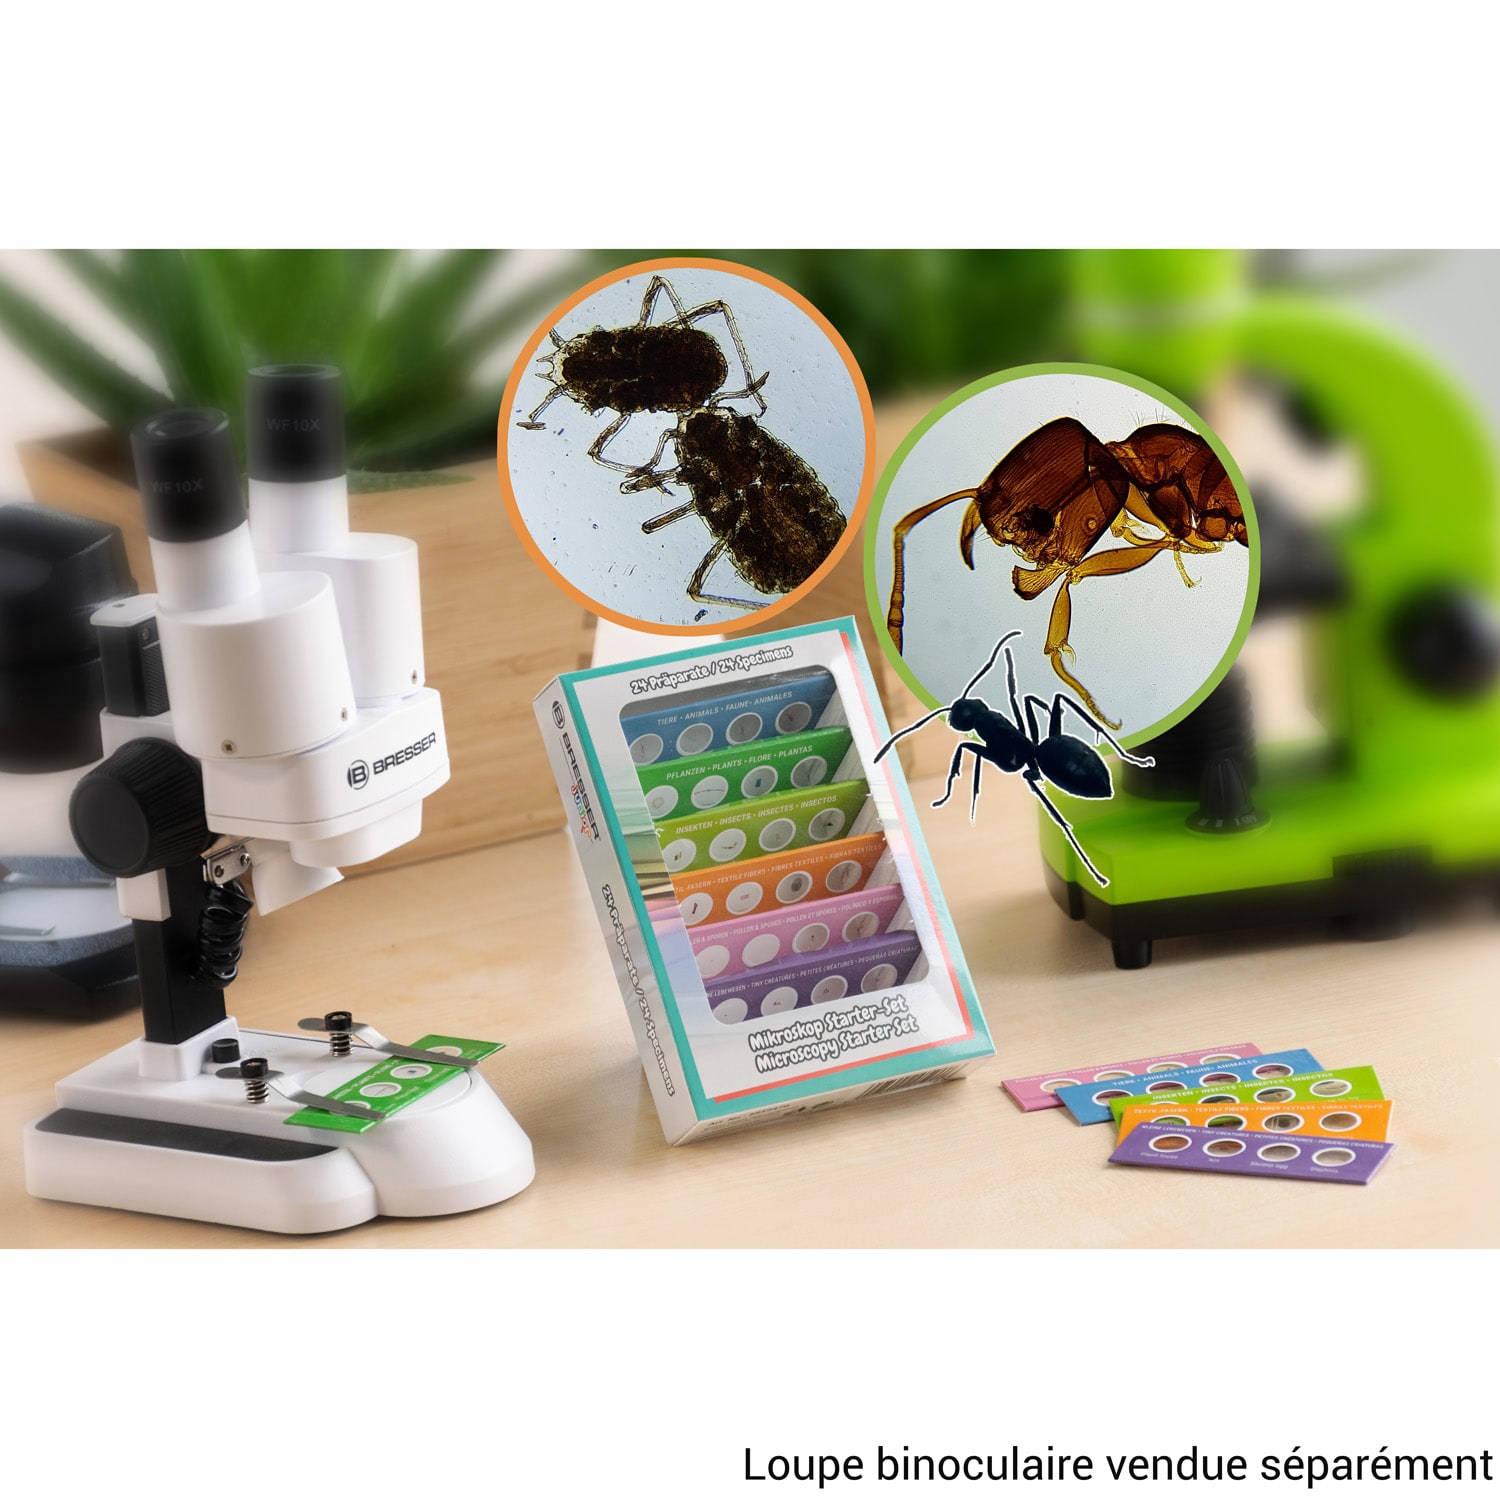 Kit d'accessoires pour microscope - Camer de préparation de